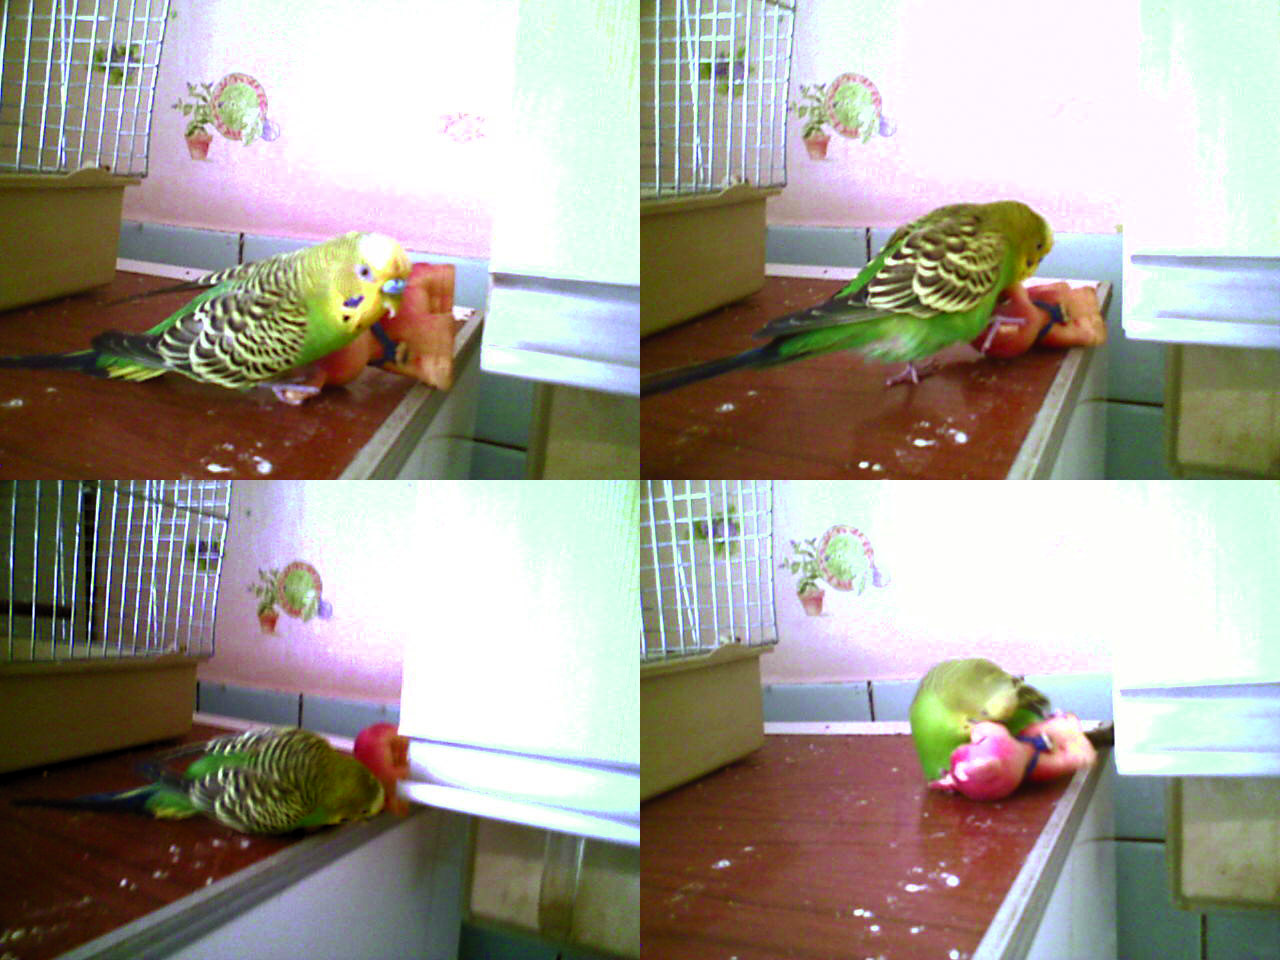 Как правильно играть с волнистым попугаем